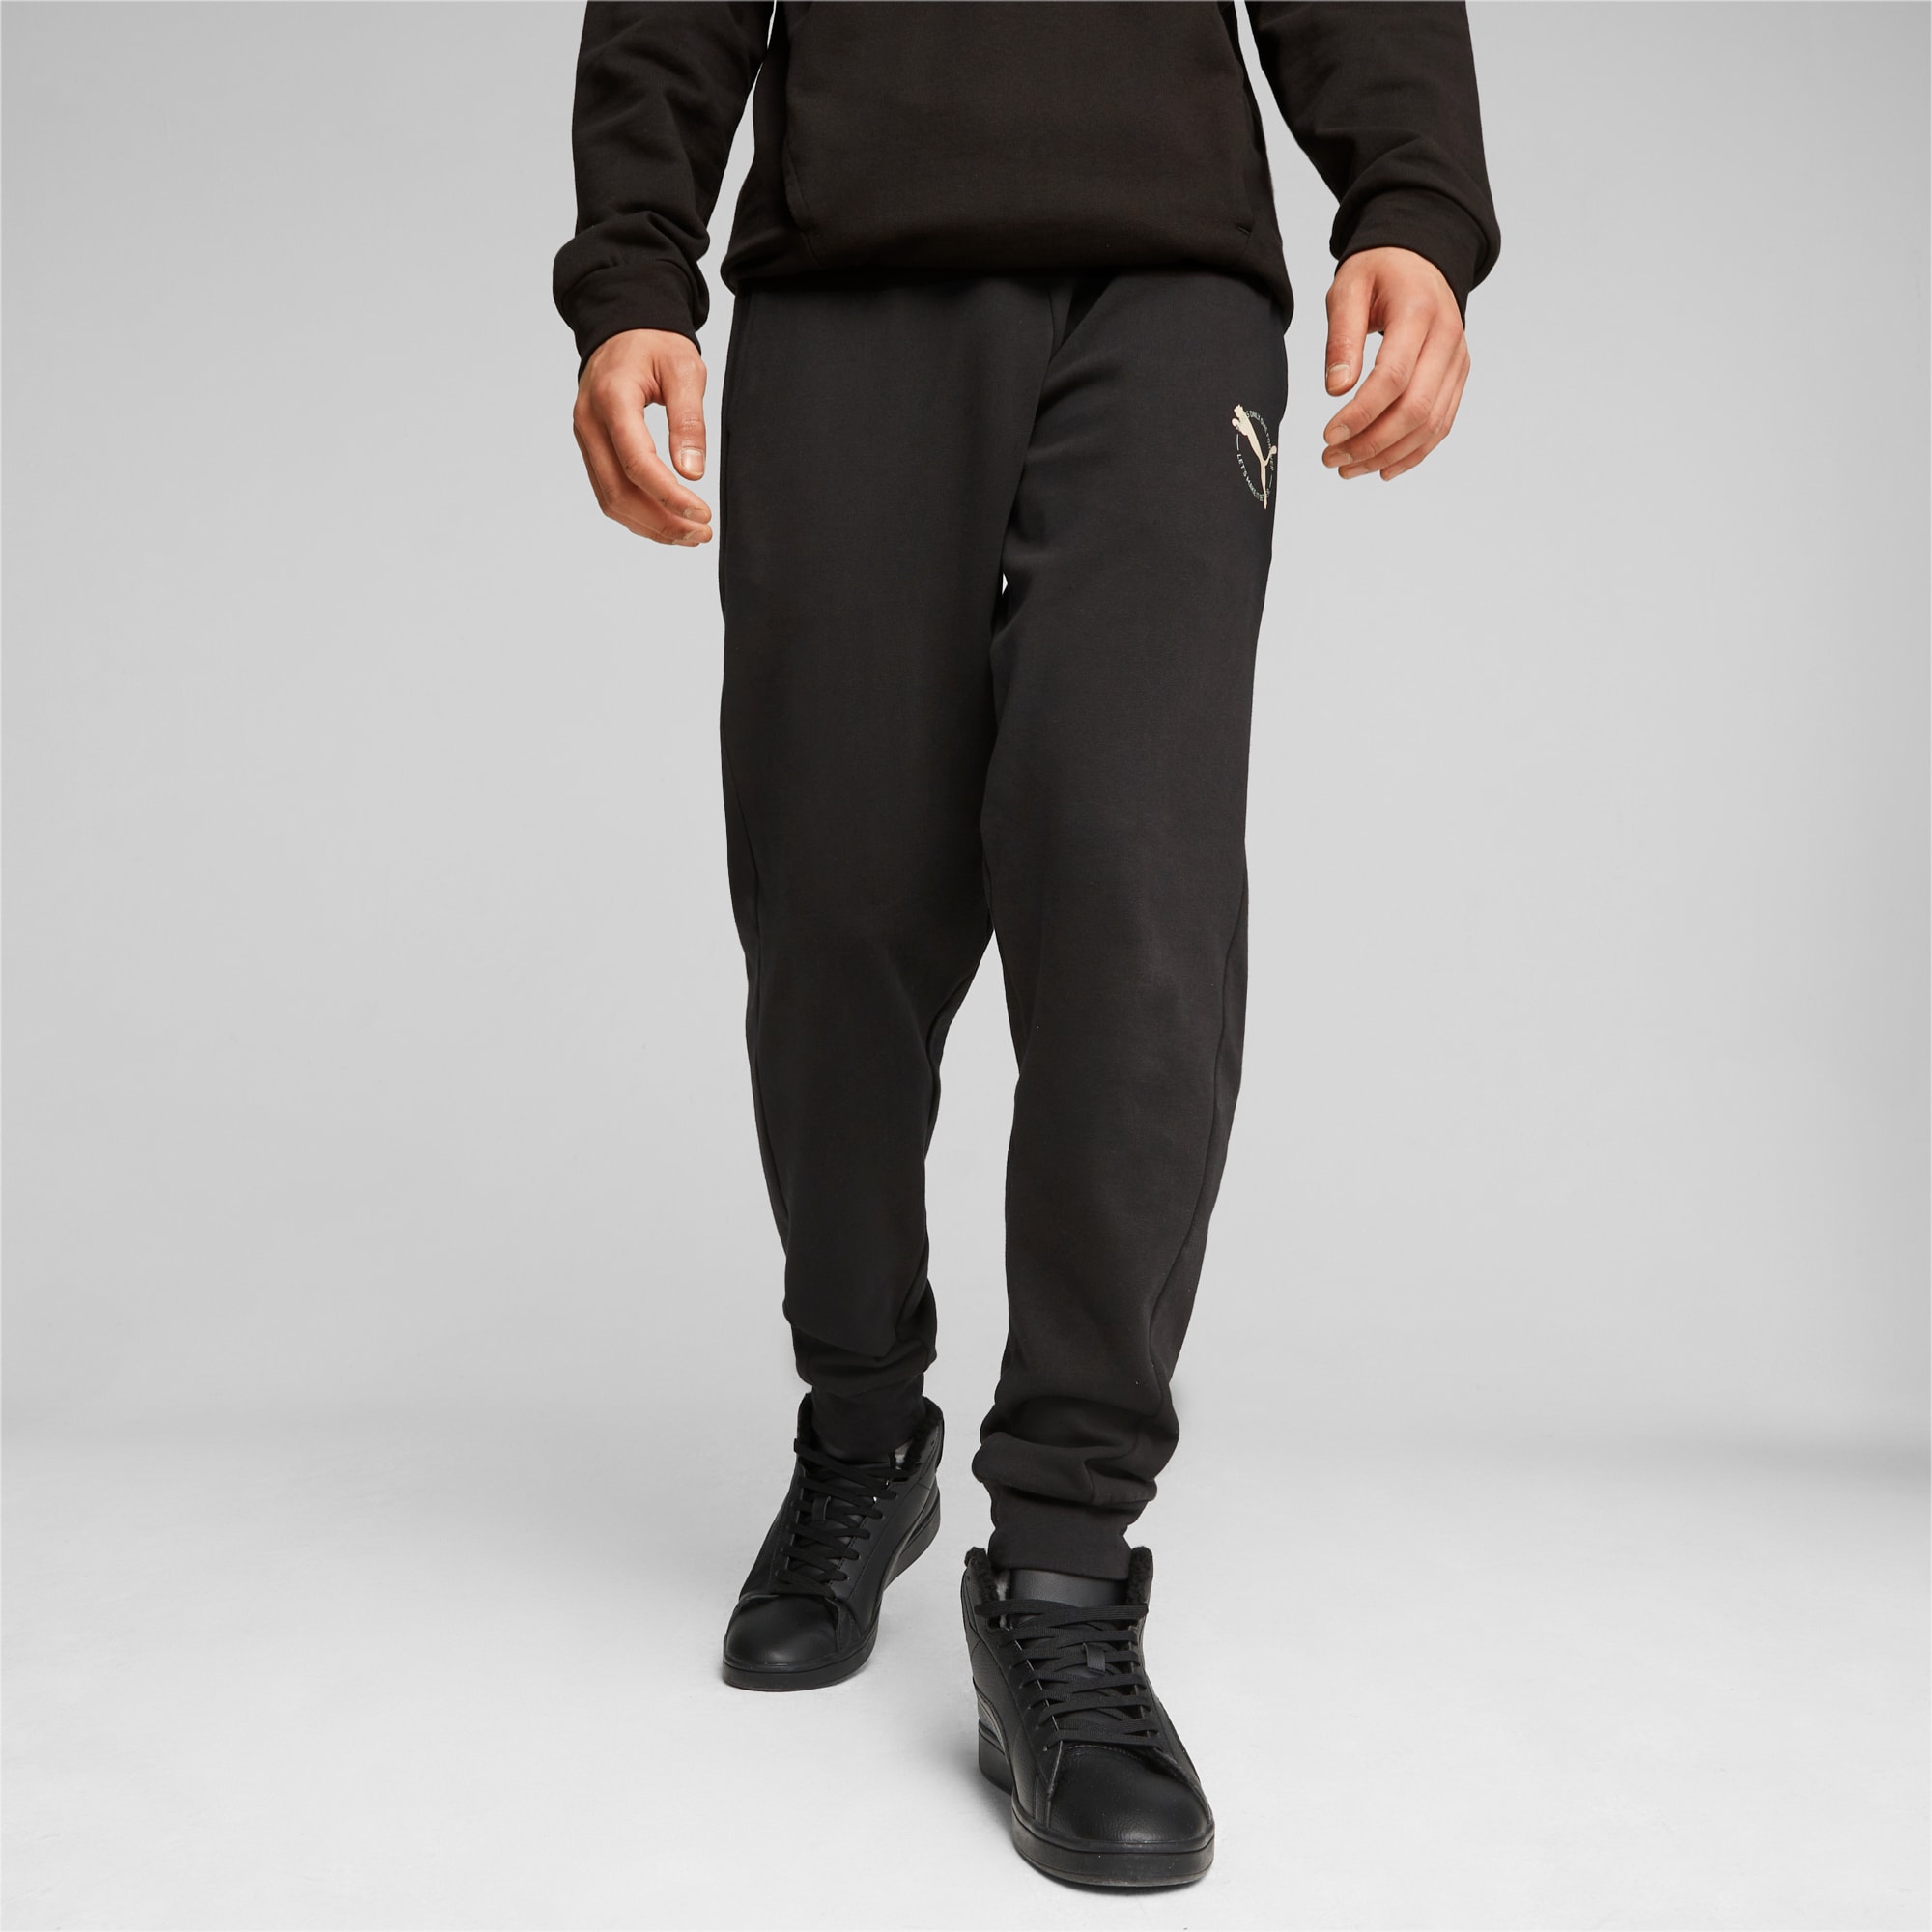 PUMA Pantalon De Survêtement Better Sportswear Homme, Noir